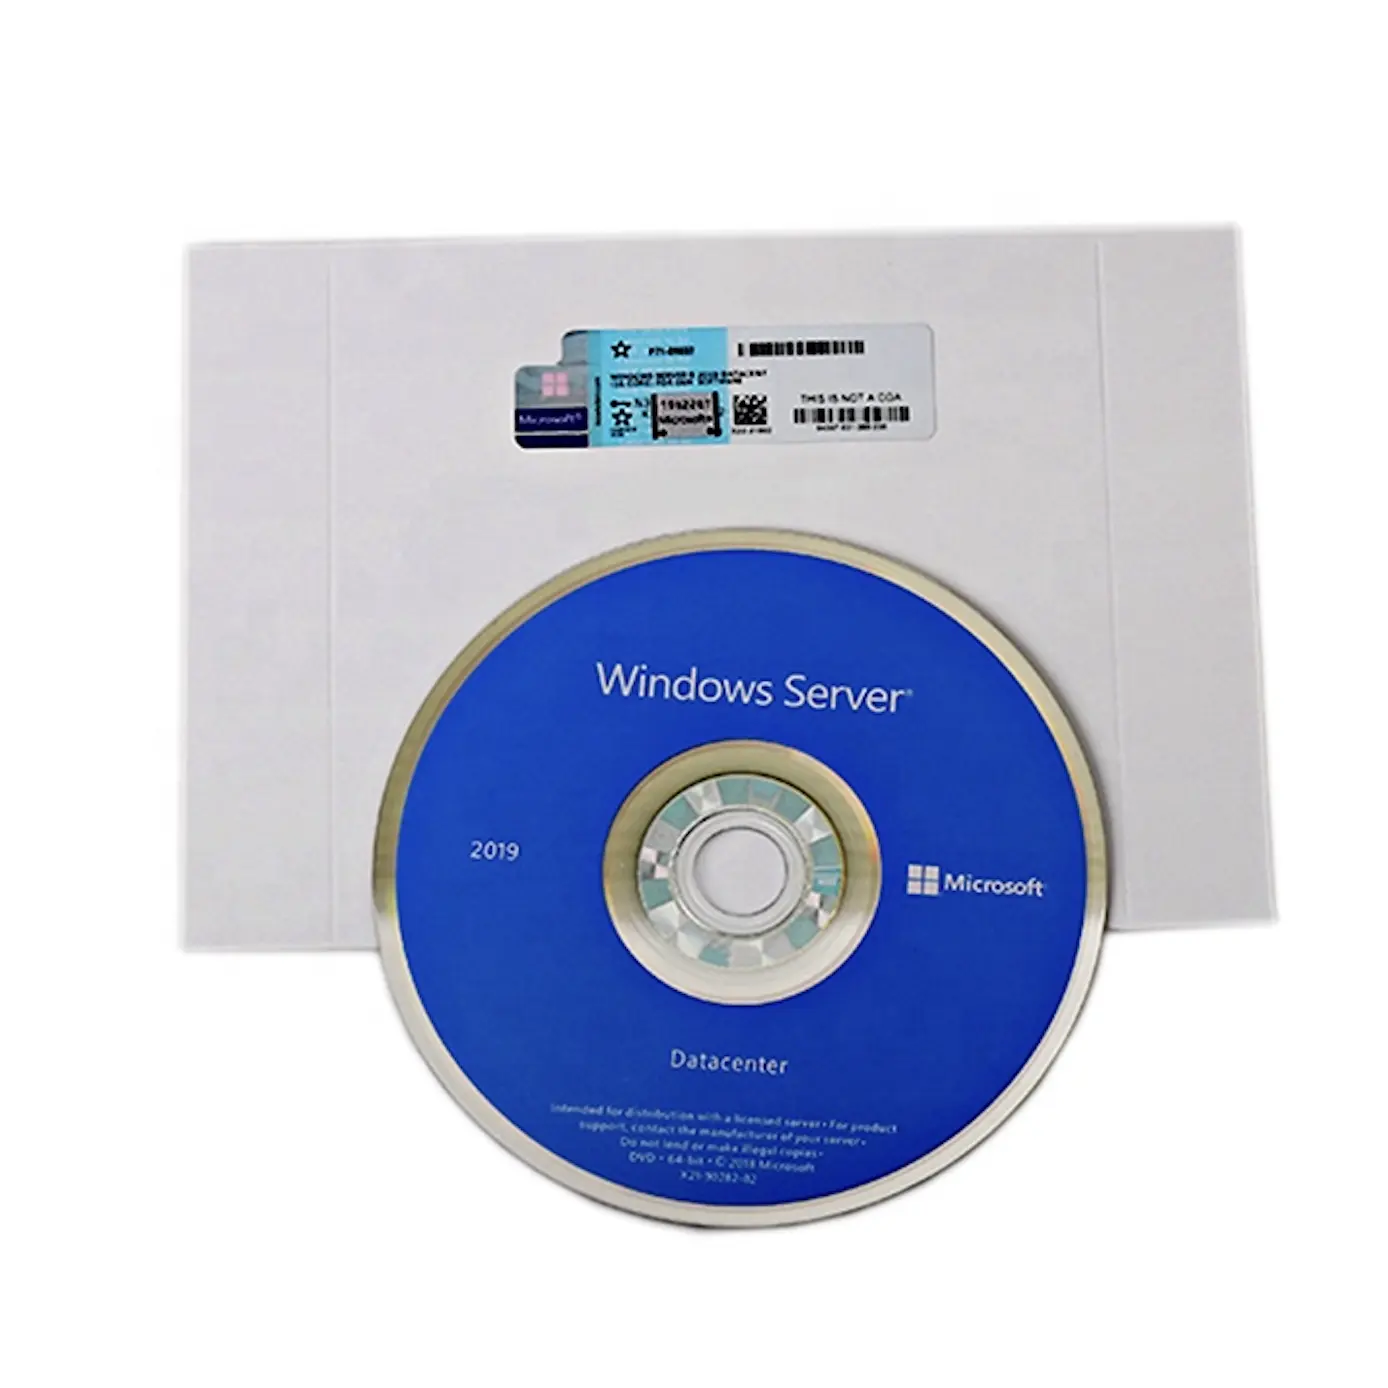 Windows Server Rds Cal Windows Werver Benutzer Cal Micro Soft Win Server 2019 Datacenter